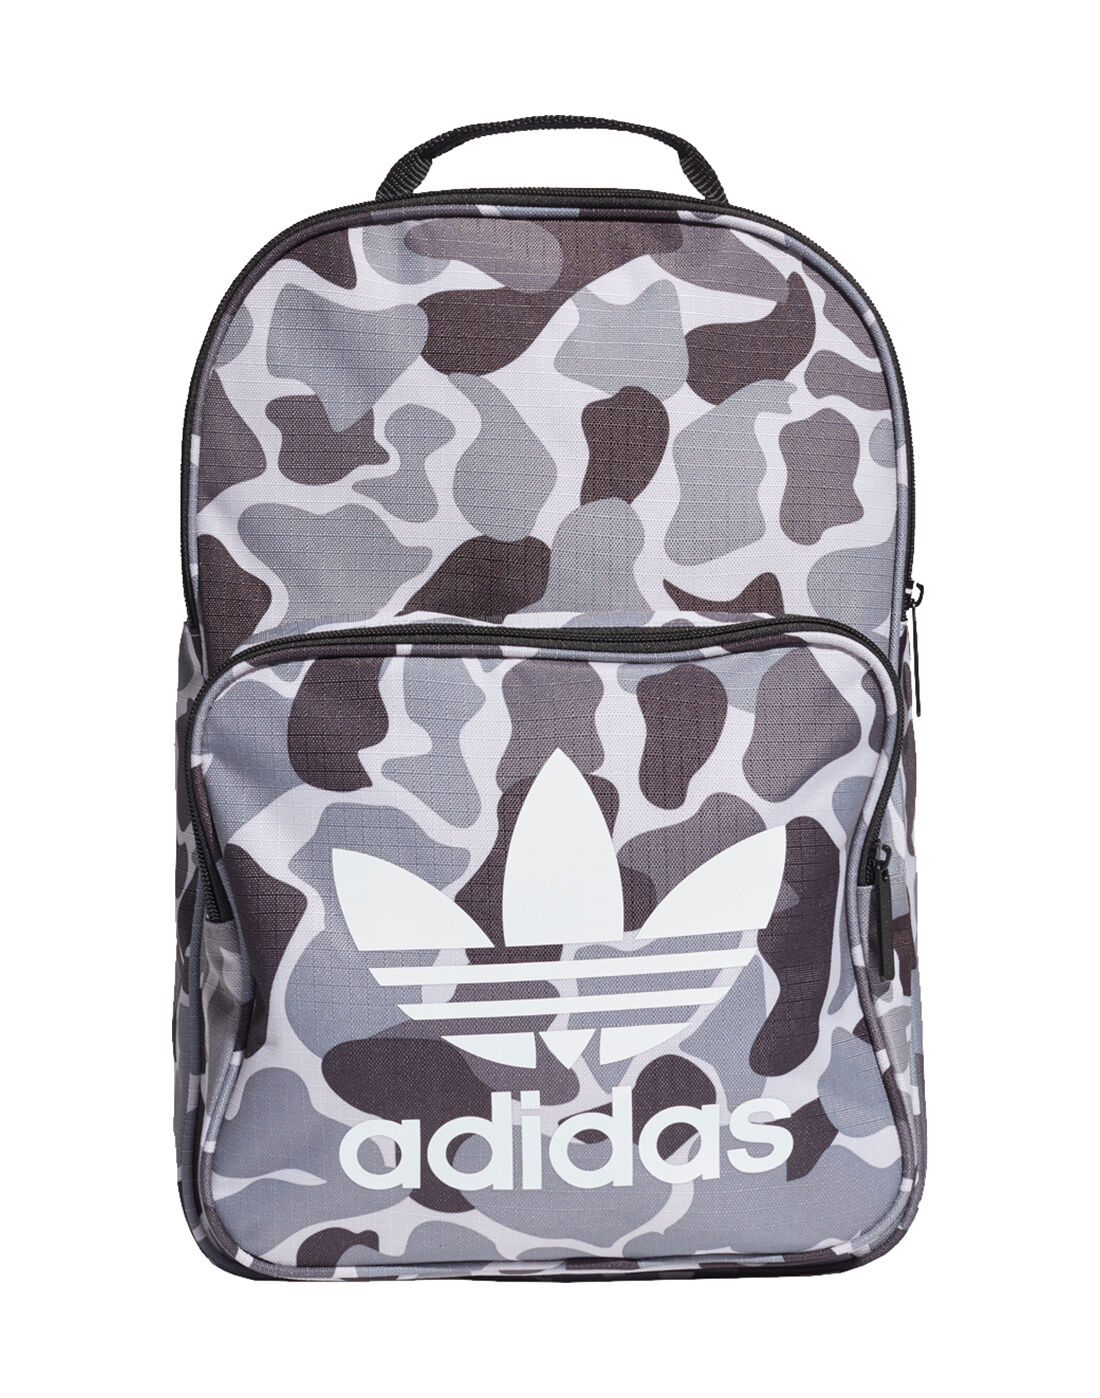 adidas army bag